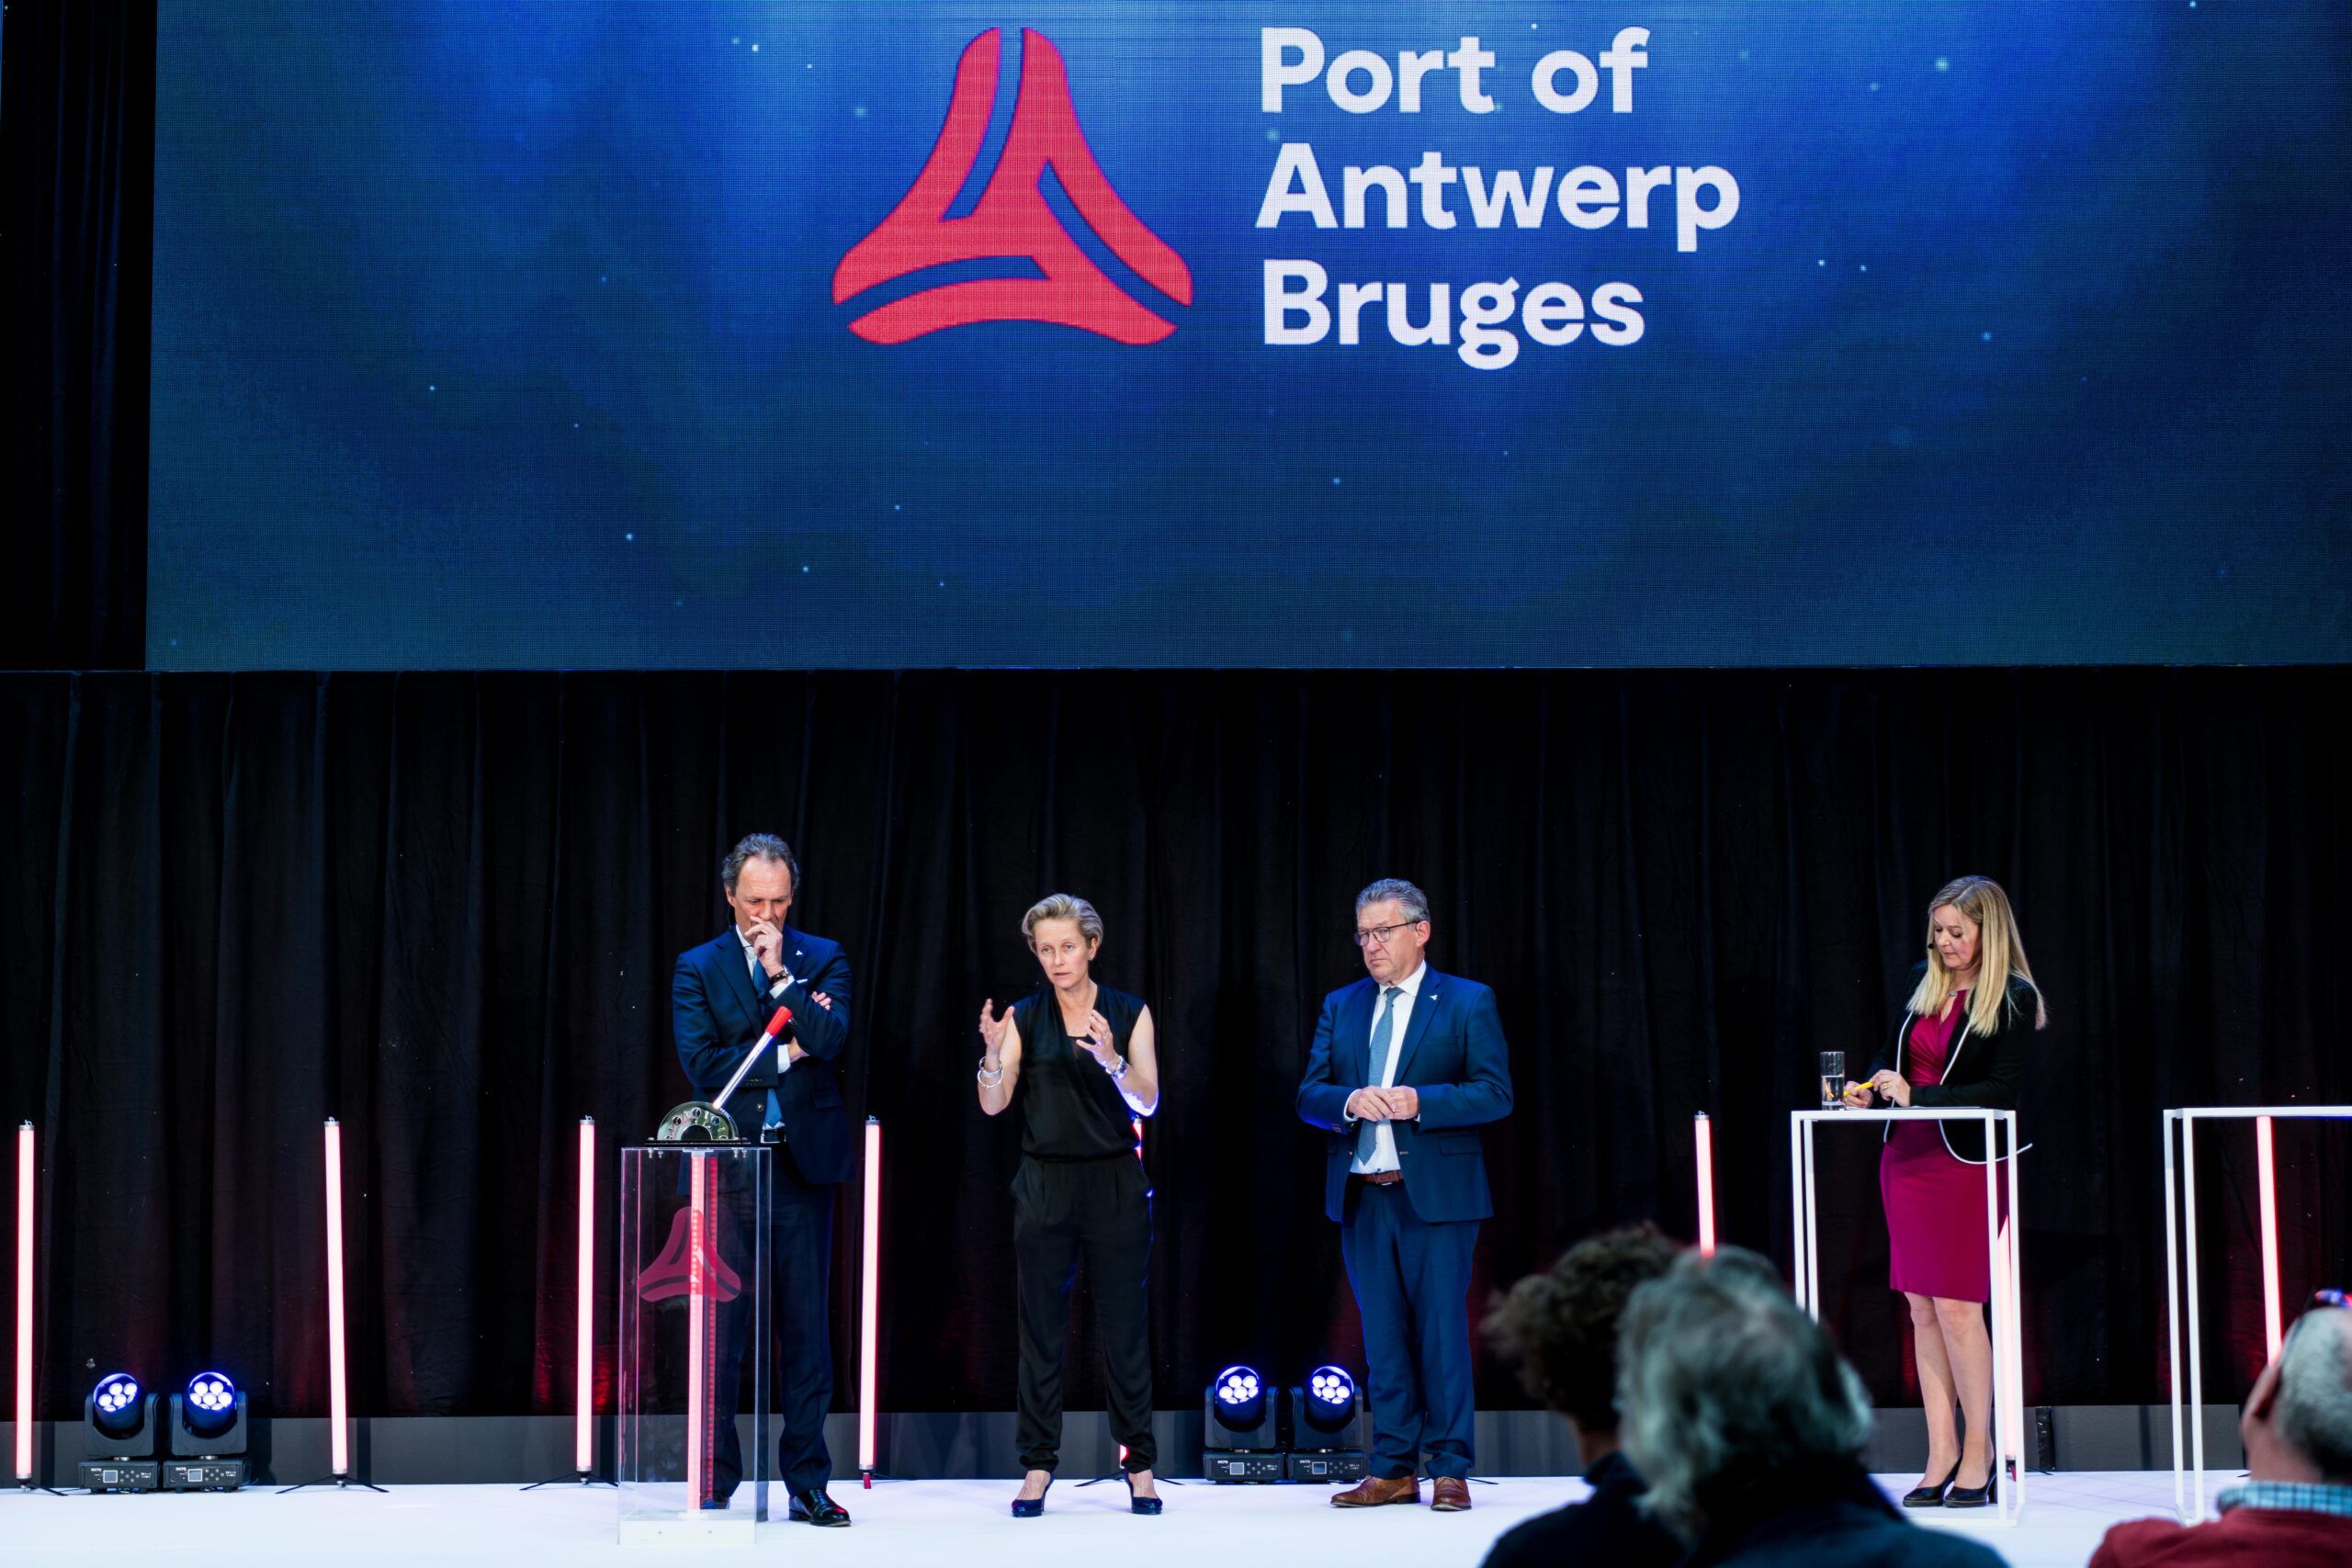 La unión de ambos puertos ha creado una autoridad portuaria más robusta. (Port of Antwerp-Bruges)